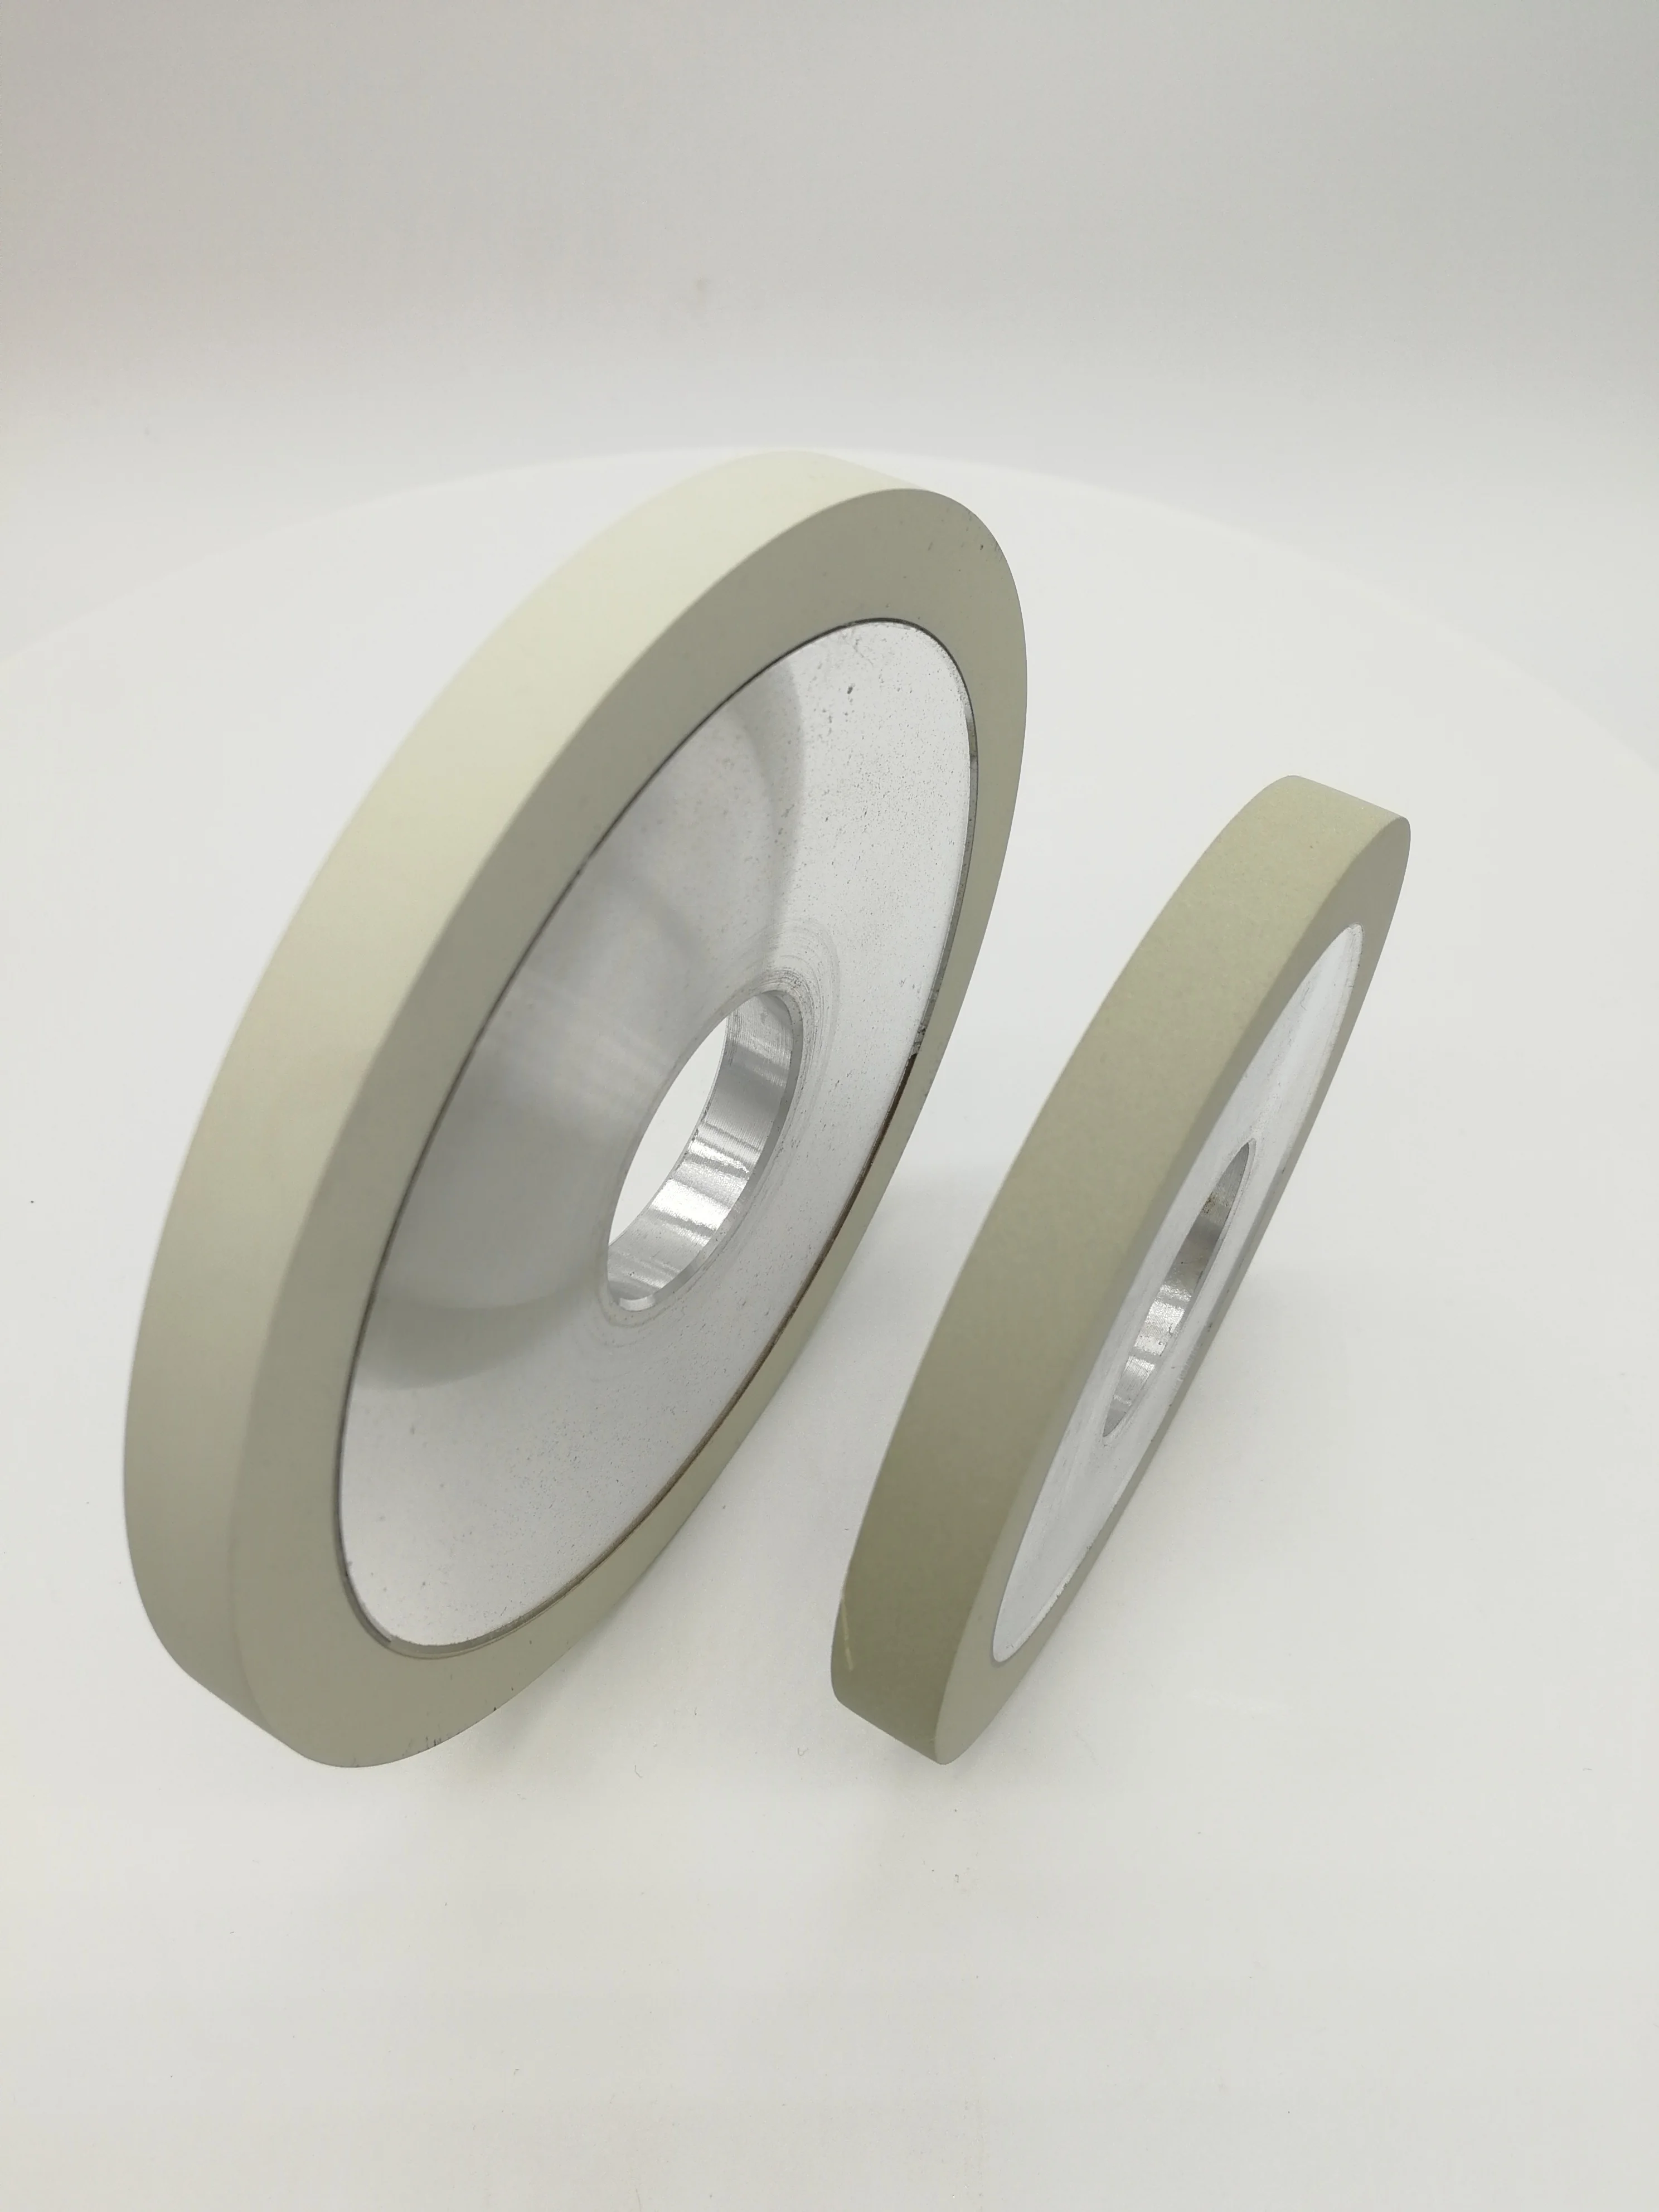 Параллельный алмазный шлифовальный круг для шлифования лезвие PCD и алмазной плакированной пластины от AliExpress RU&CIS NEW